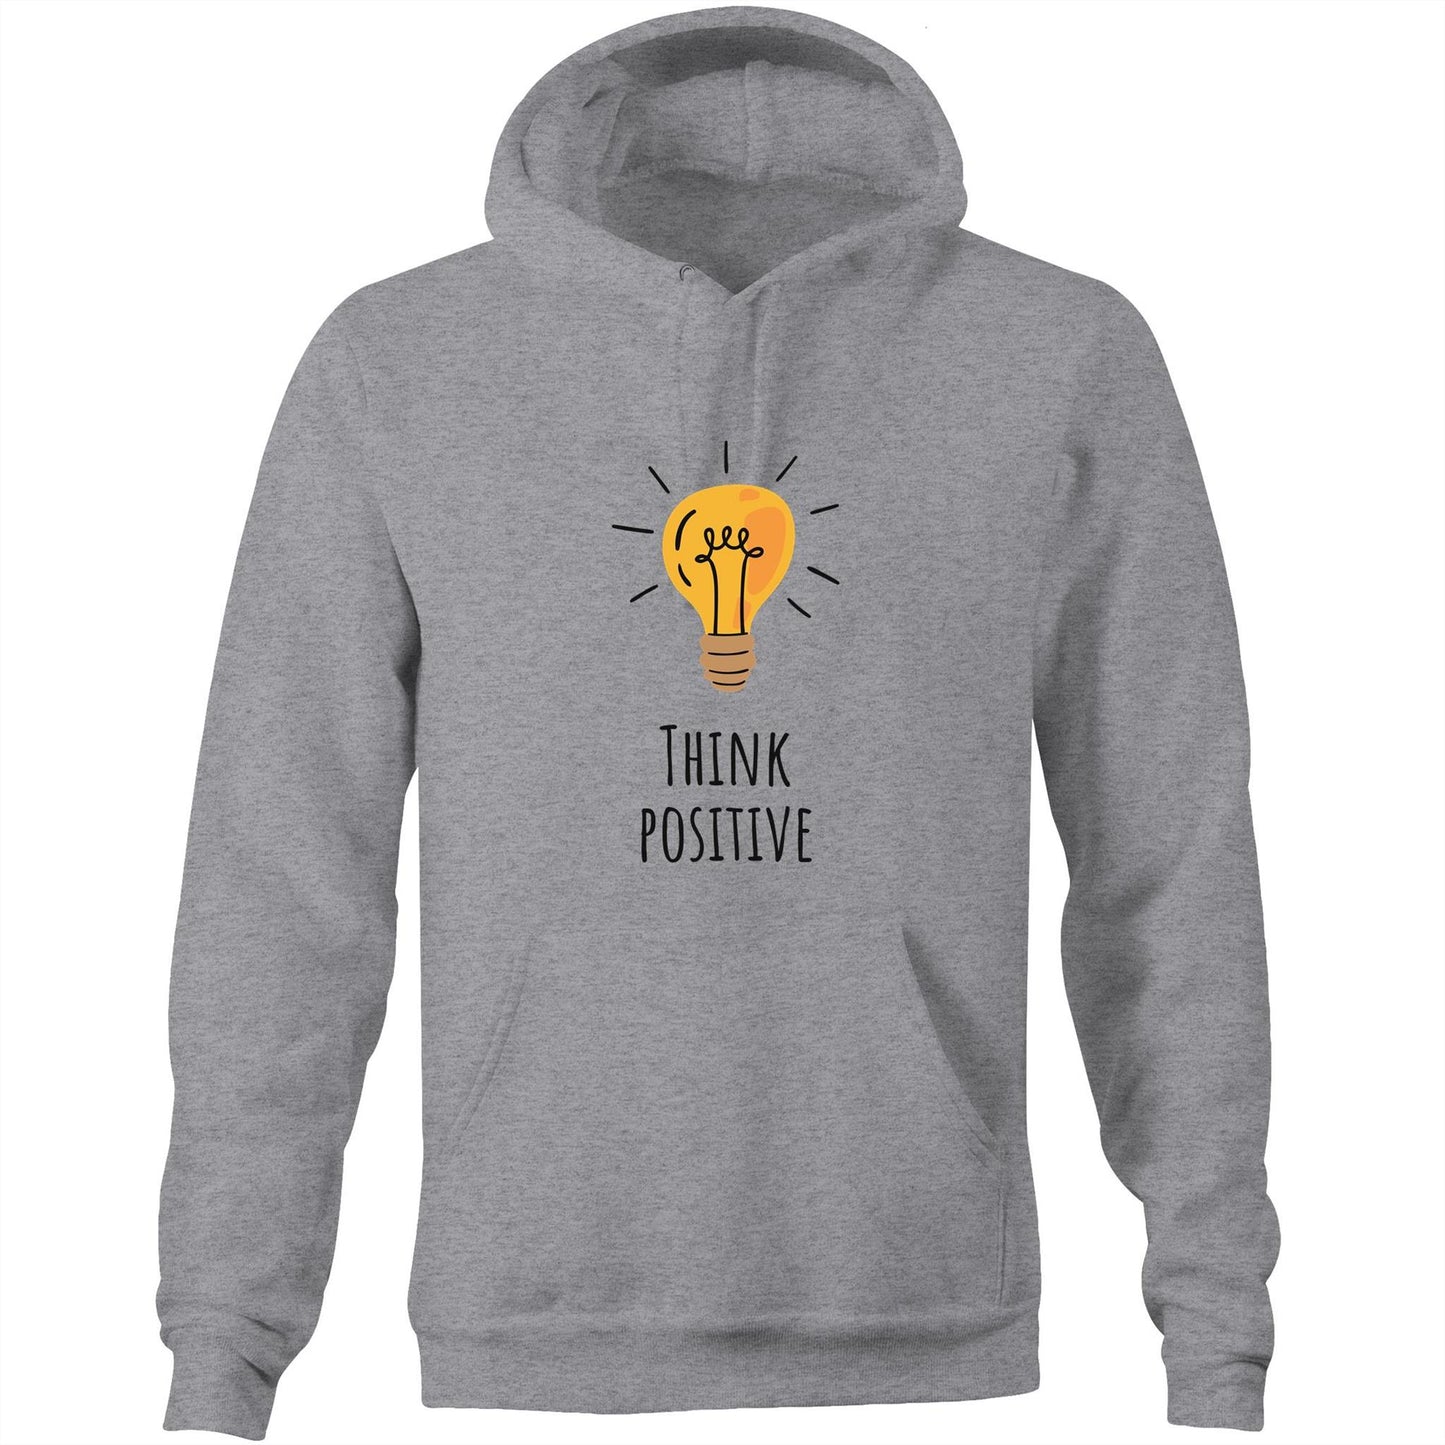 Think Postitive - Pocket Hoodie Sweatshirt Grey Marle Hoodie Motivation Tech